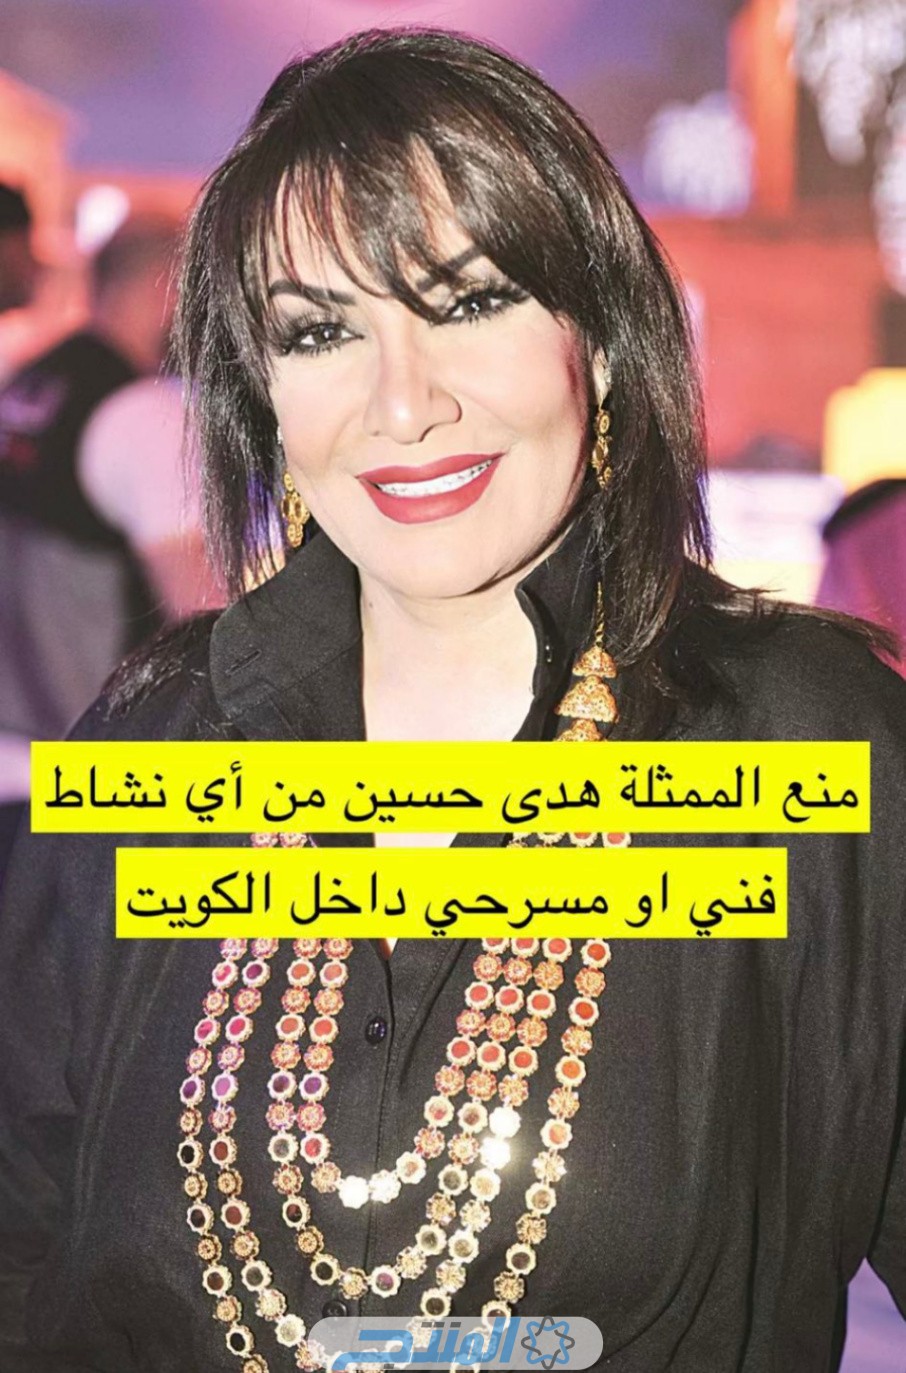 الكويت تفرض عقوبات مشددة على صناع مسلسل زوجة واحدة لا تكفي 